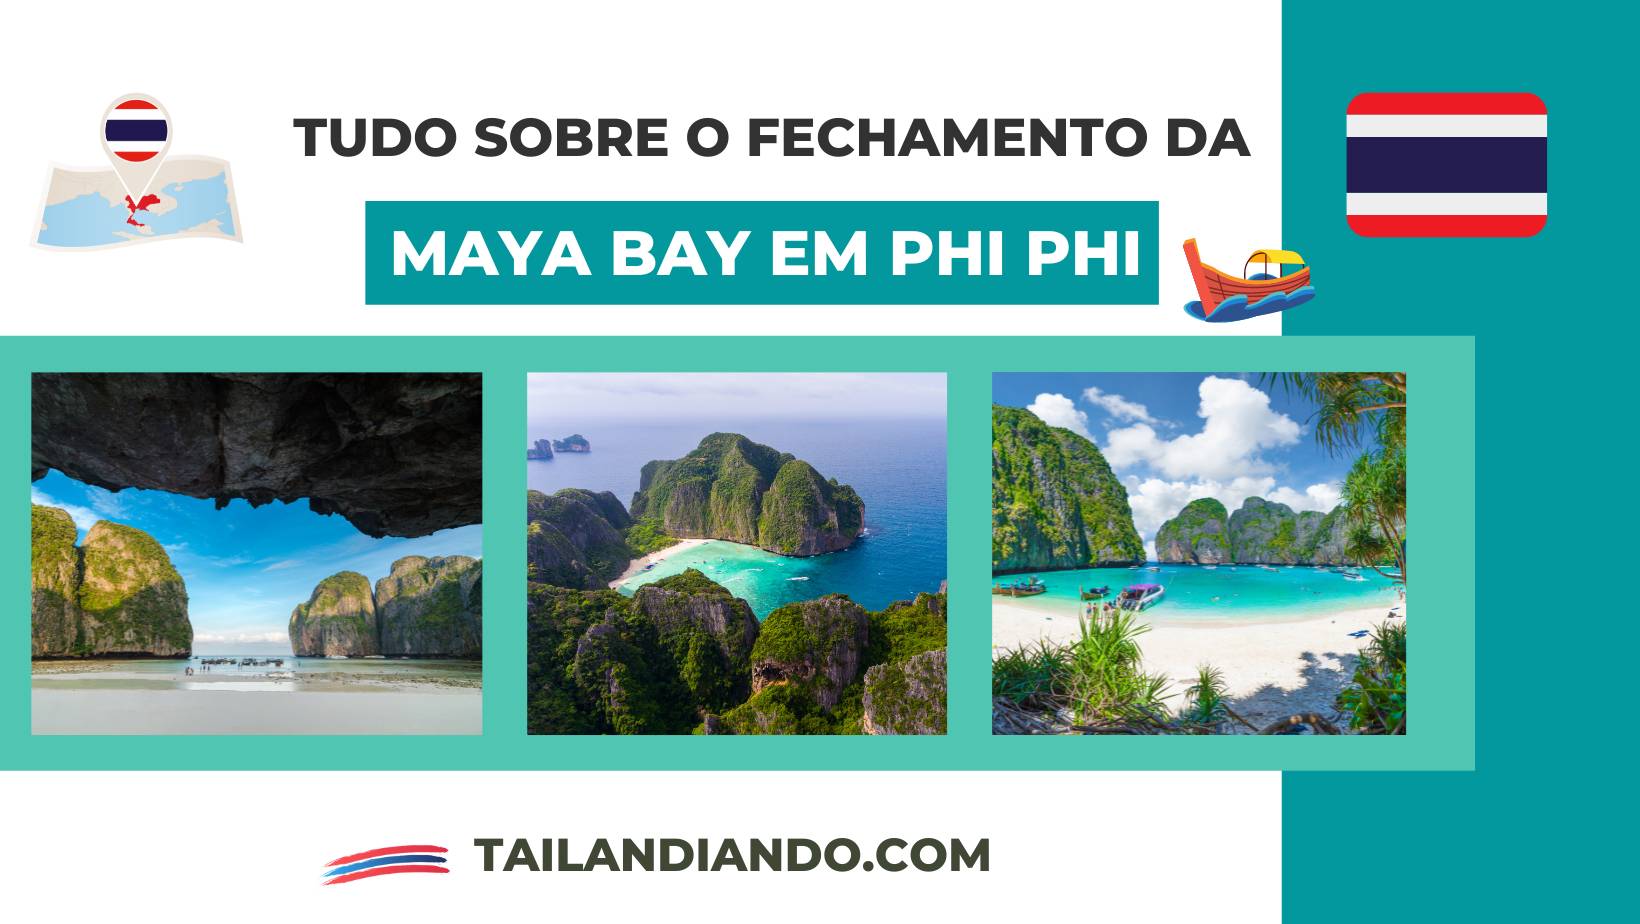 Maya bay vai fechar - tudo sobre o fechamento, abertura e datas da praia mais famosa da Tailândia, em Phi Phi